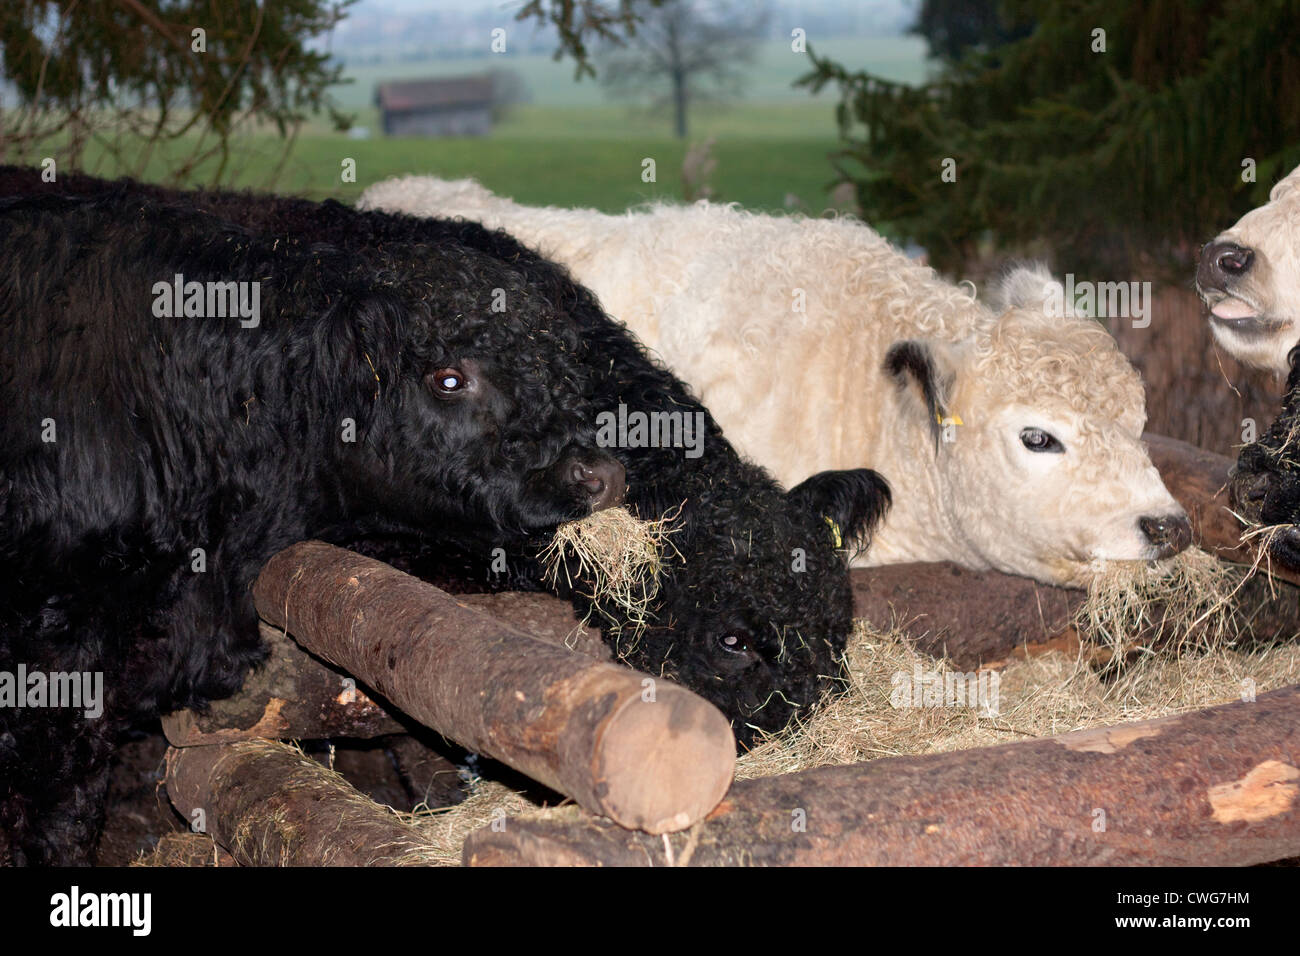 Galloway, Rinder, Fütterung, Schwarz und Weiß, Cattle, black and white Stock Photo